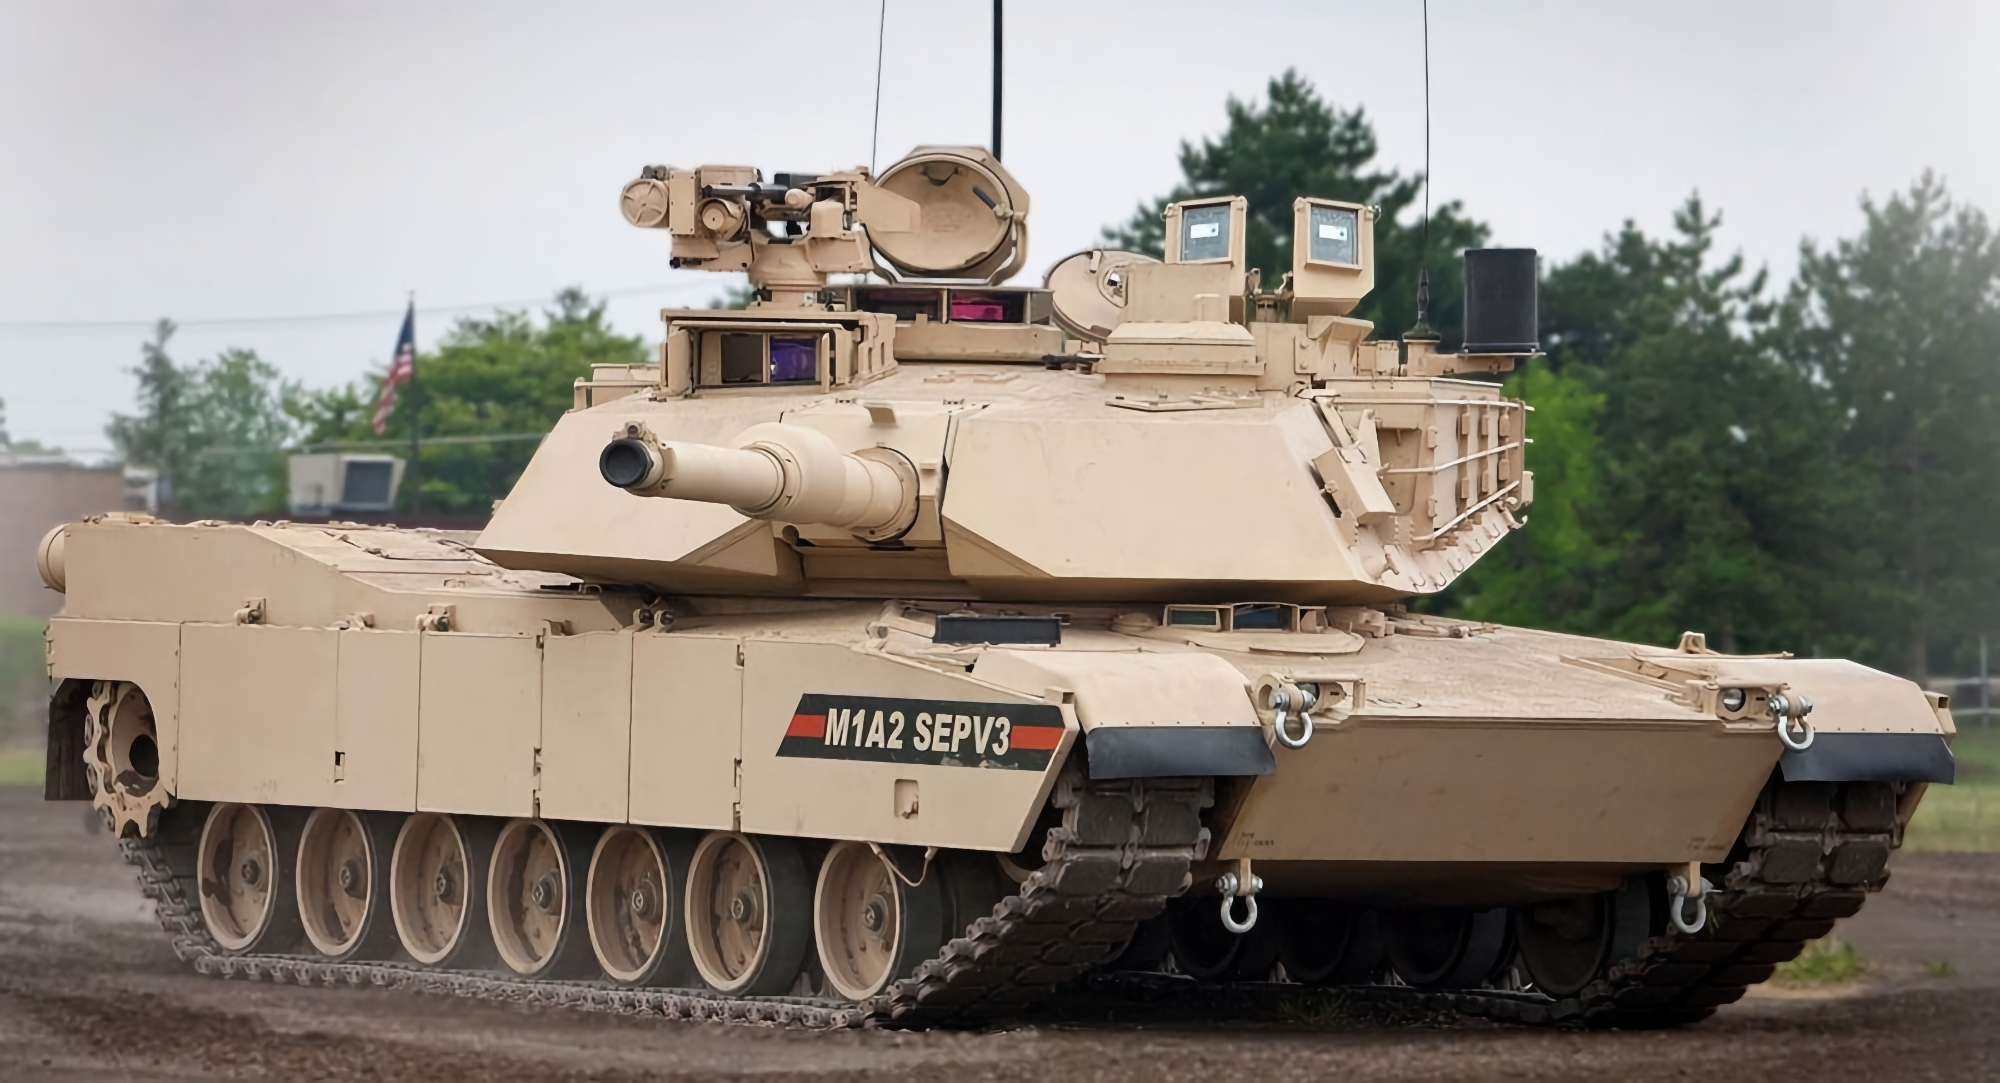 General Dynamics получила заказ на производство 250 современных танков Abrams M1A2 SEPv3 для Польши, стоимость контракта составляет $1.148 млрд